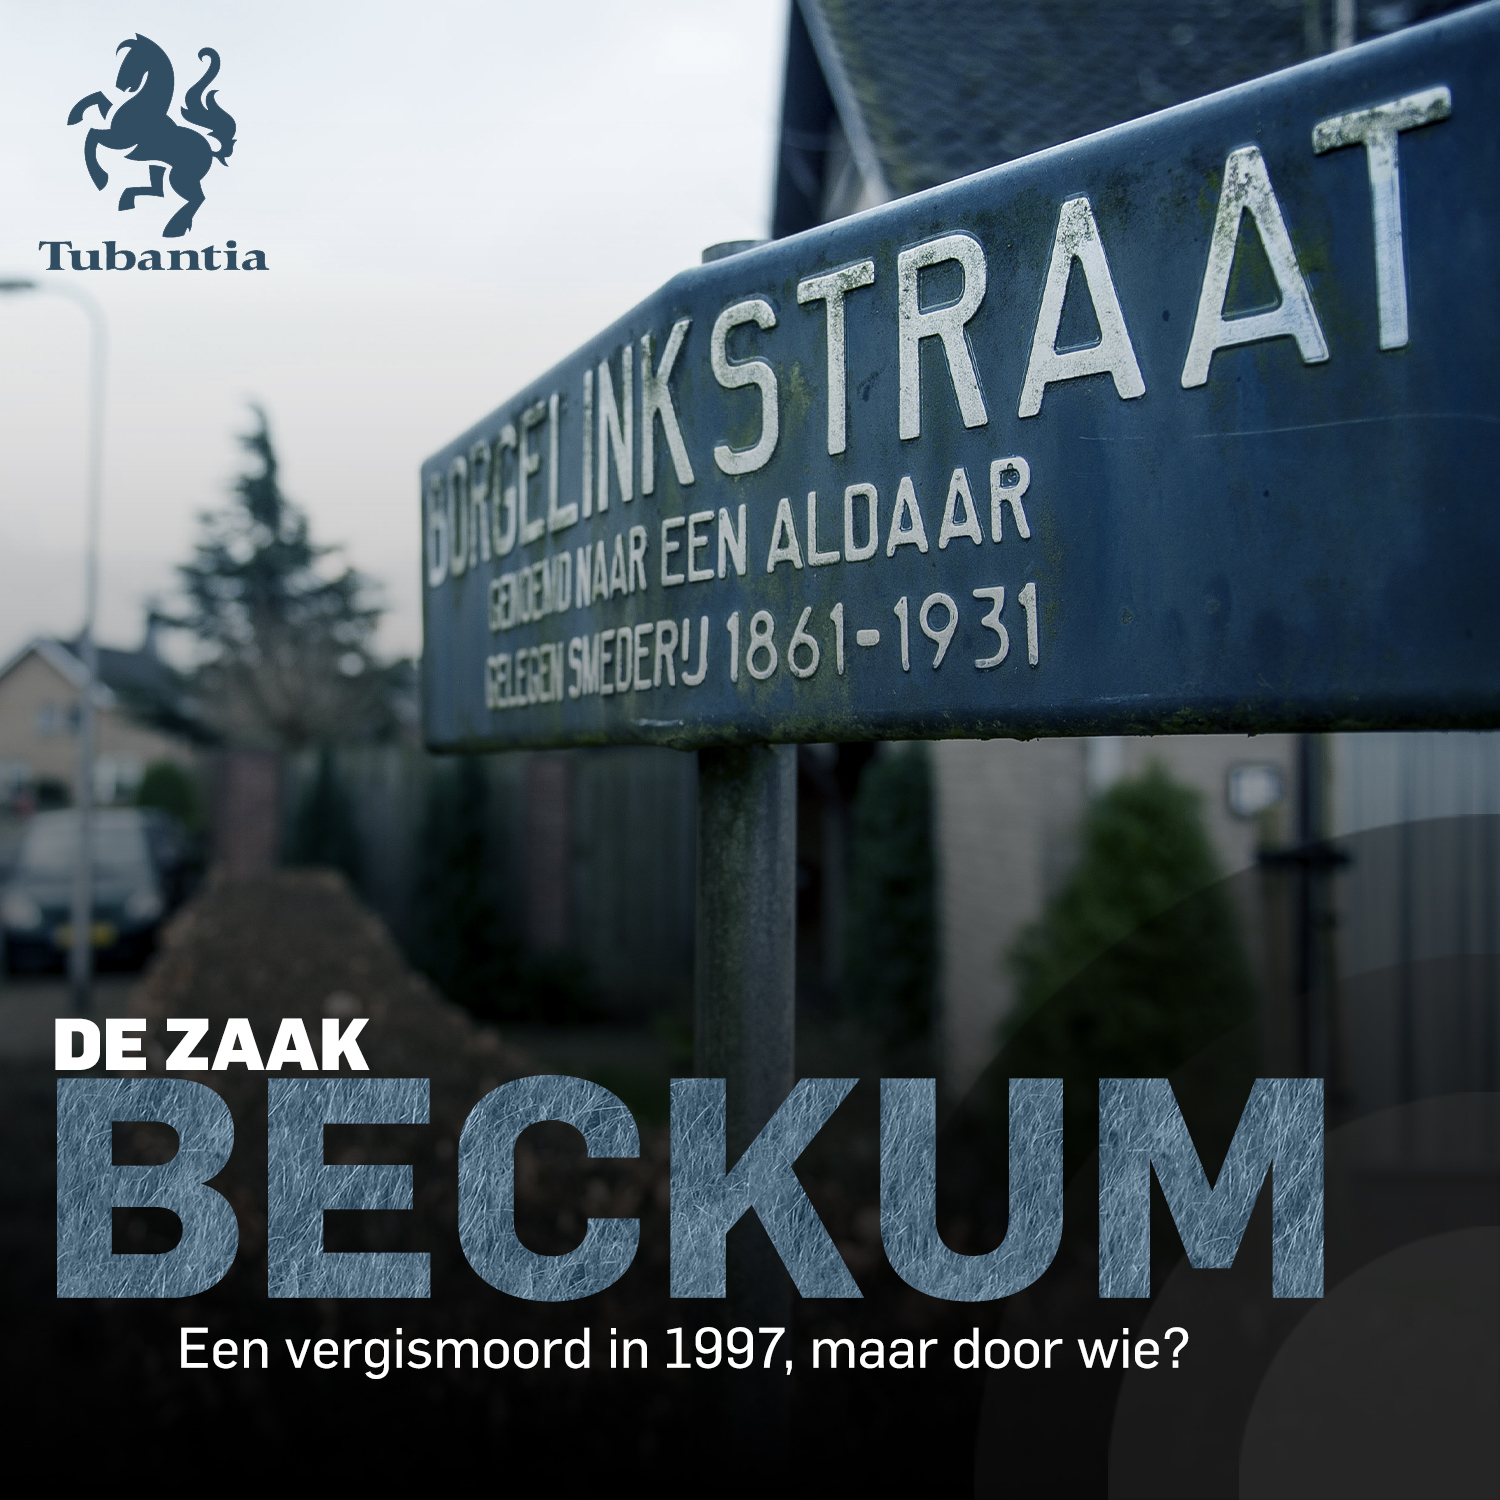 De Zaak Beckum: een vergismoord in 1997, maar door wie?